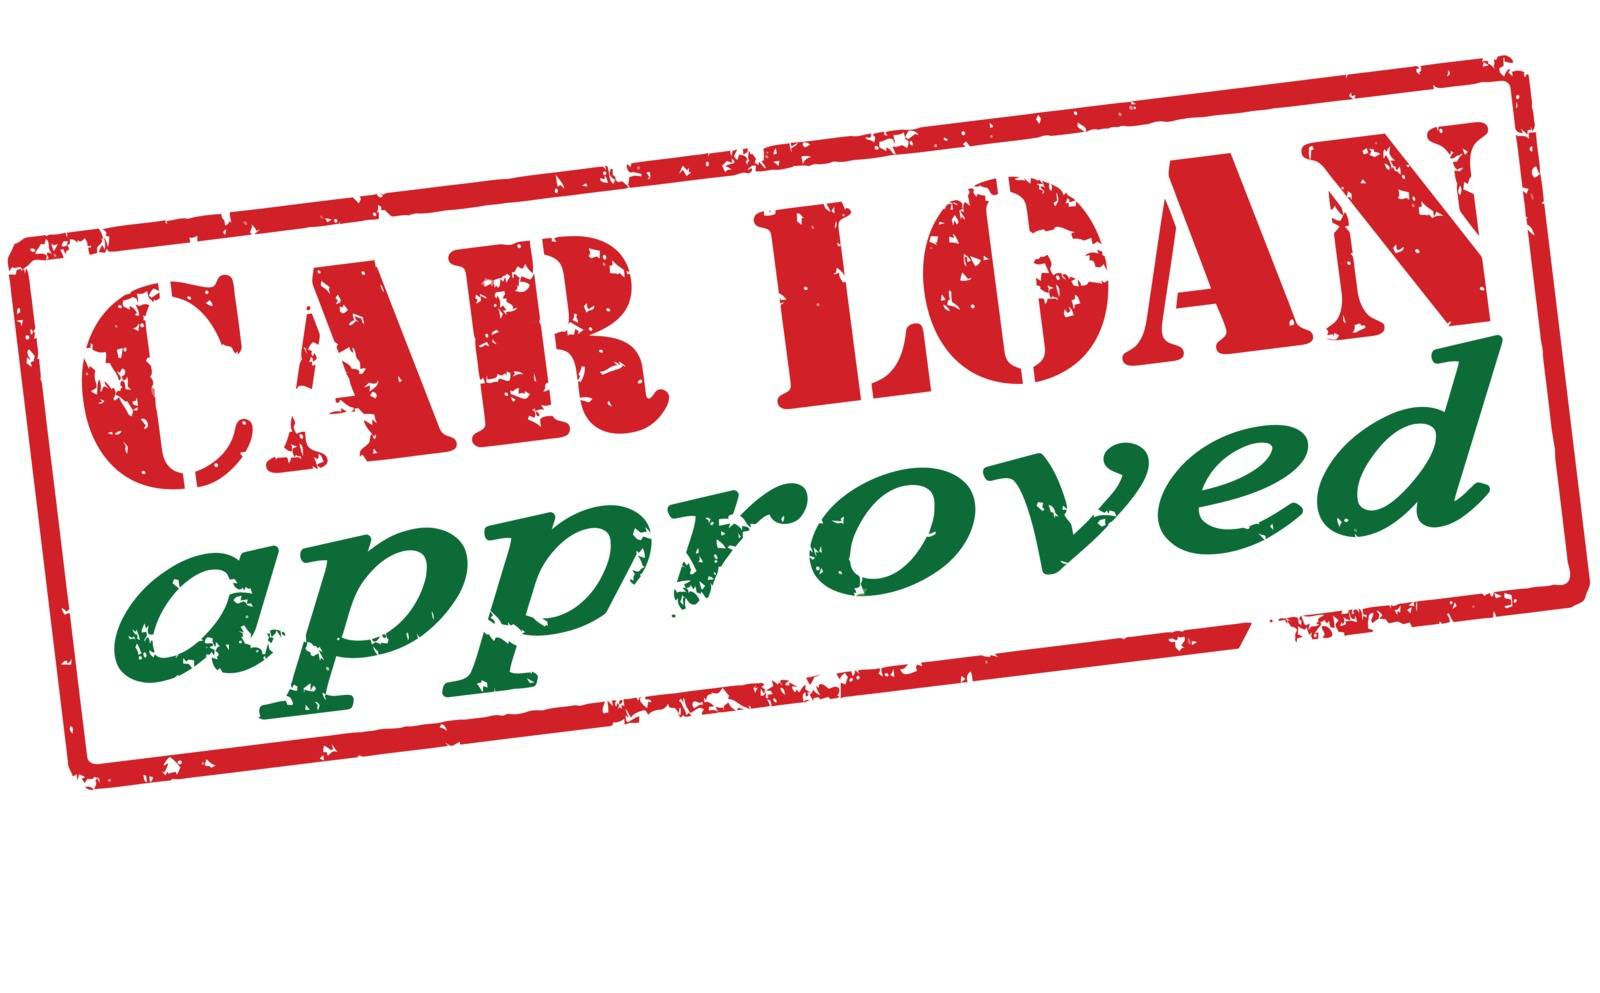 Car loan approved by carmenbobo